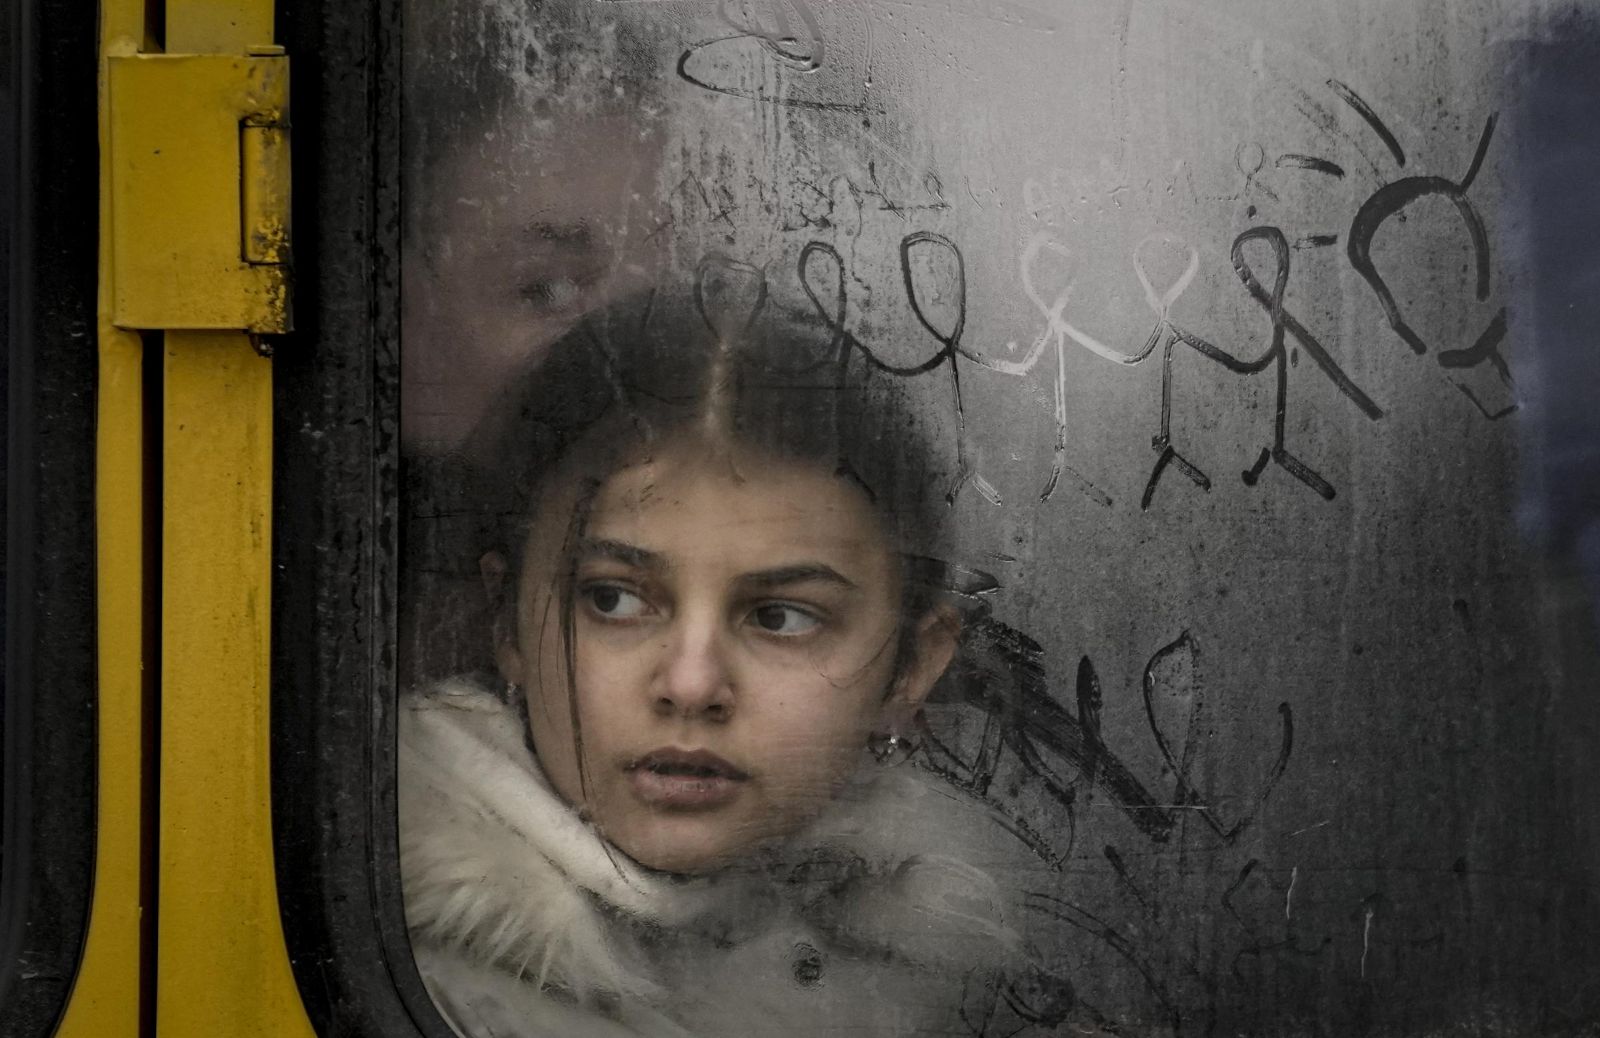 Bambini in fuga dalla guerra: il più grande crimine è quello contro l’infanzia